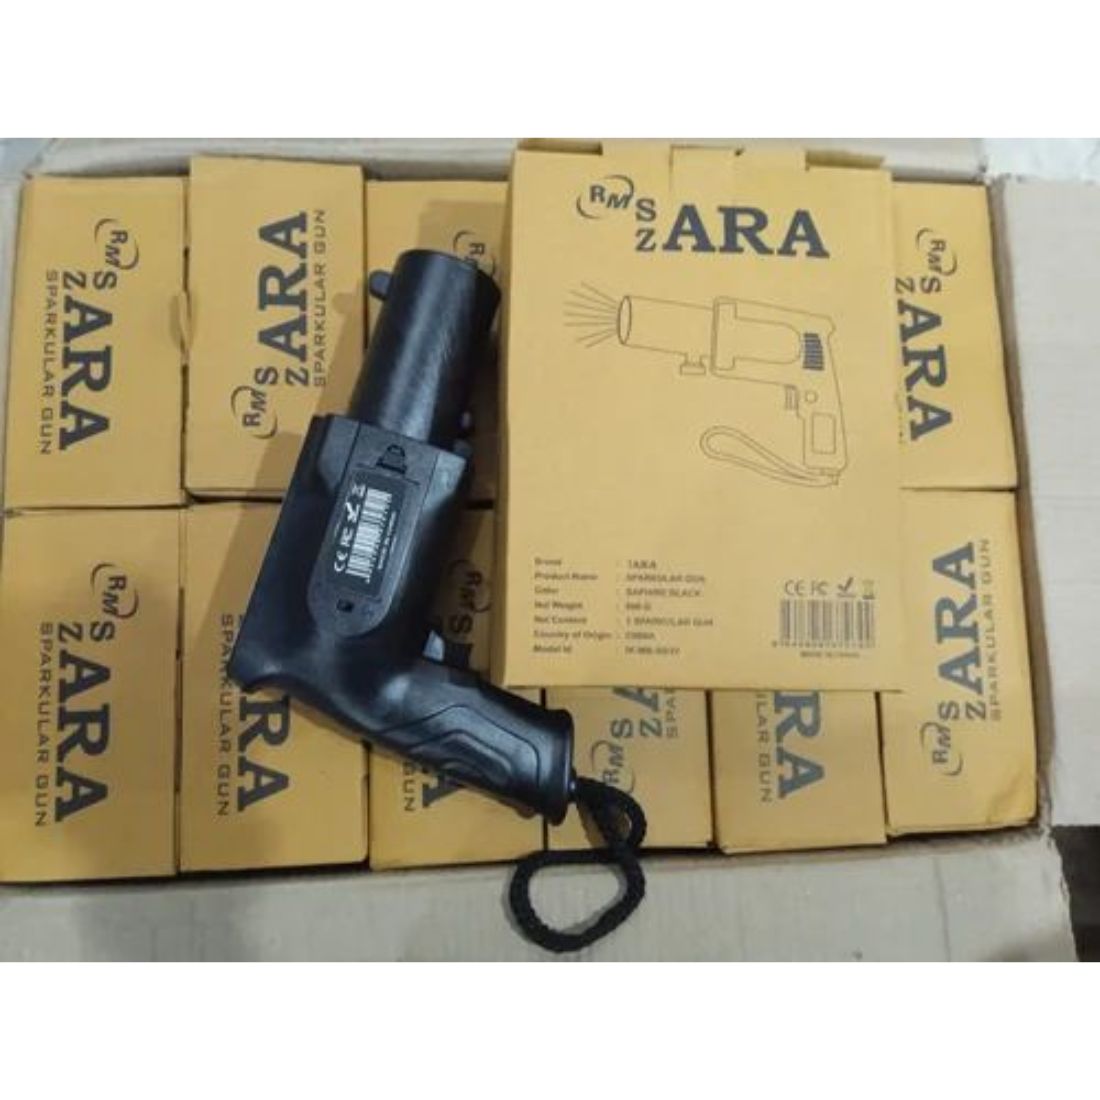 Zara Cold Pyro Gun Sparkular Gun with Metal Handle